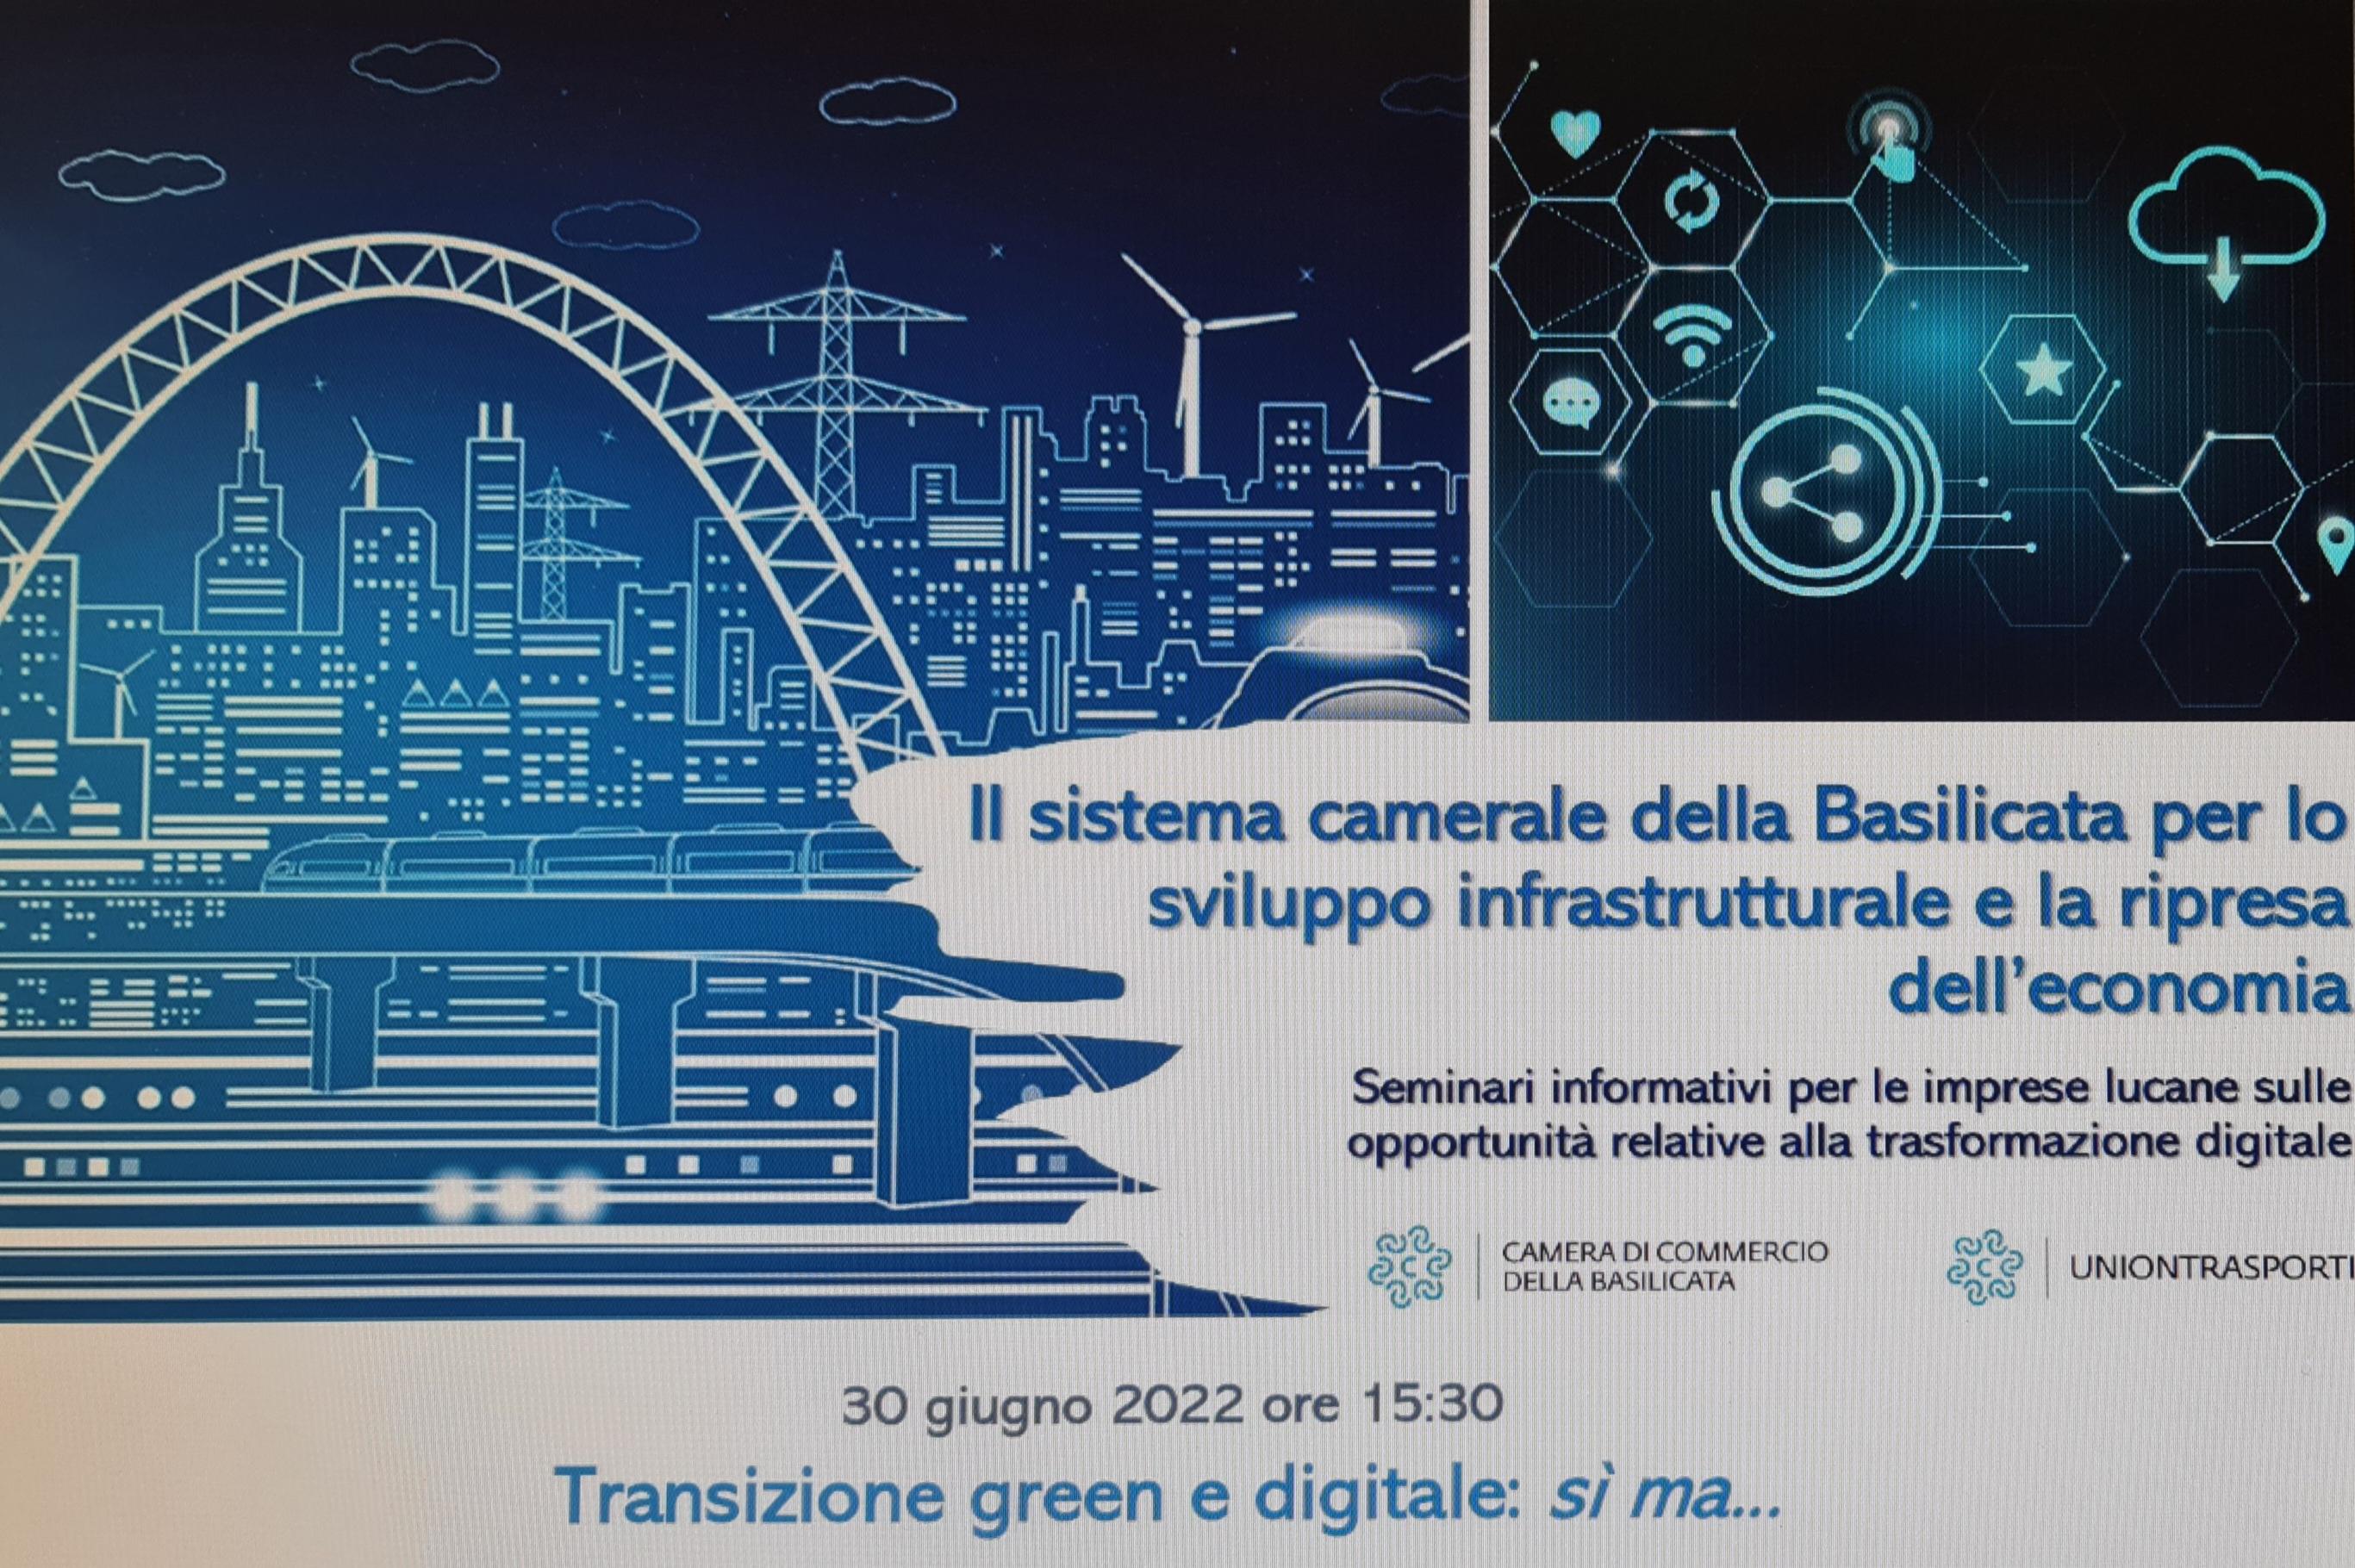 WEBINAR: “Transizione green e digitale: sì ma..” promosso e organizzato dalla Camera di commercio della Basilicata